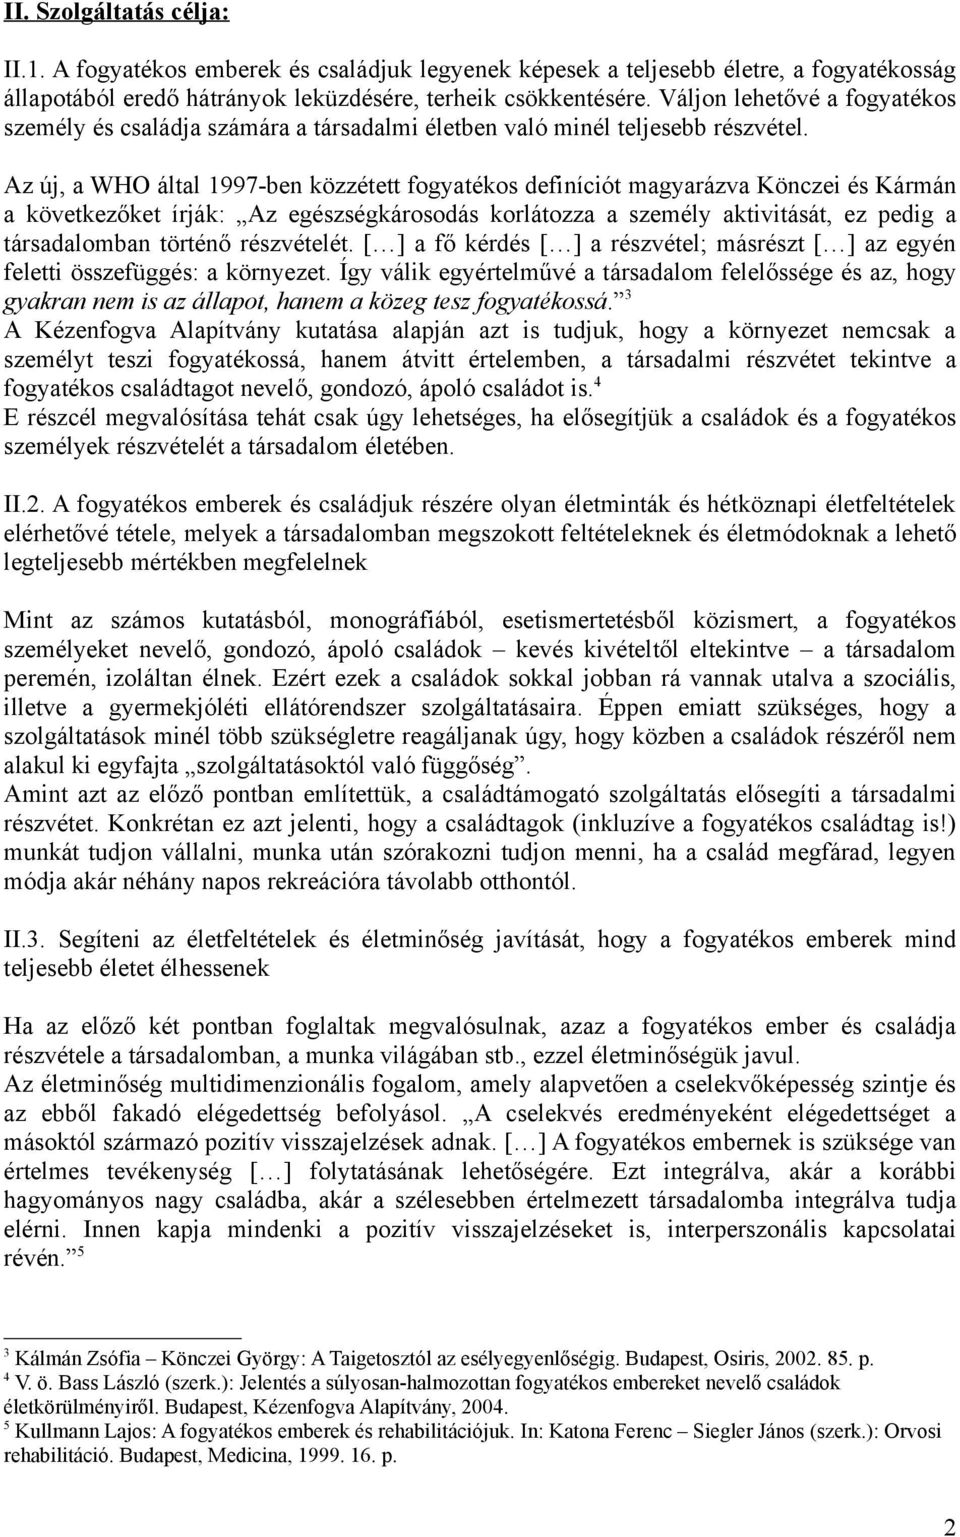 Az új, a WHO által 1997-ben közzétett fogyatékos definíciót magyarázva Könczei és Kármán a következőket írják: Az egészségkárosodás korlátozza a személy aktivitását, ez pedig a társadalomban történő